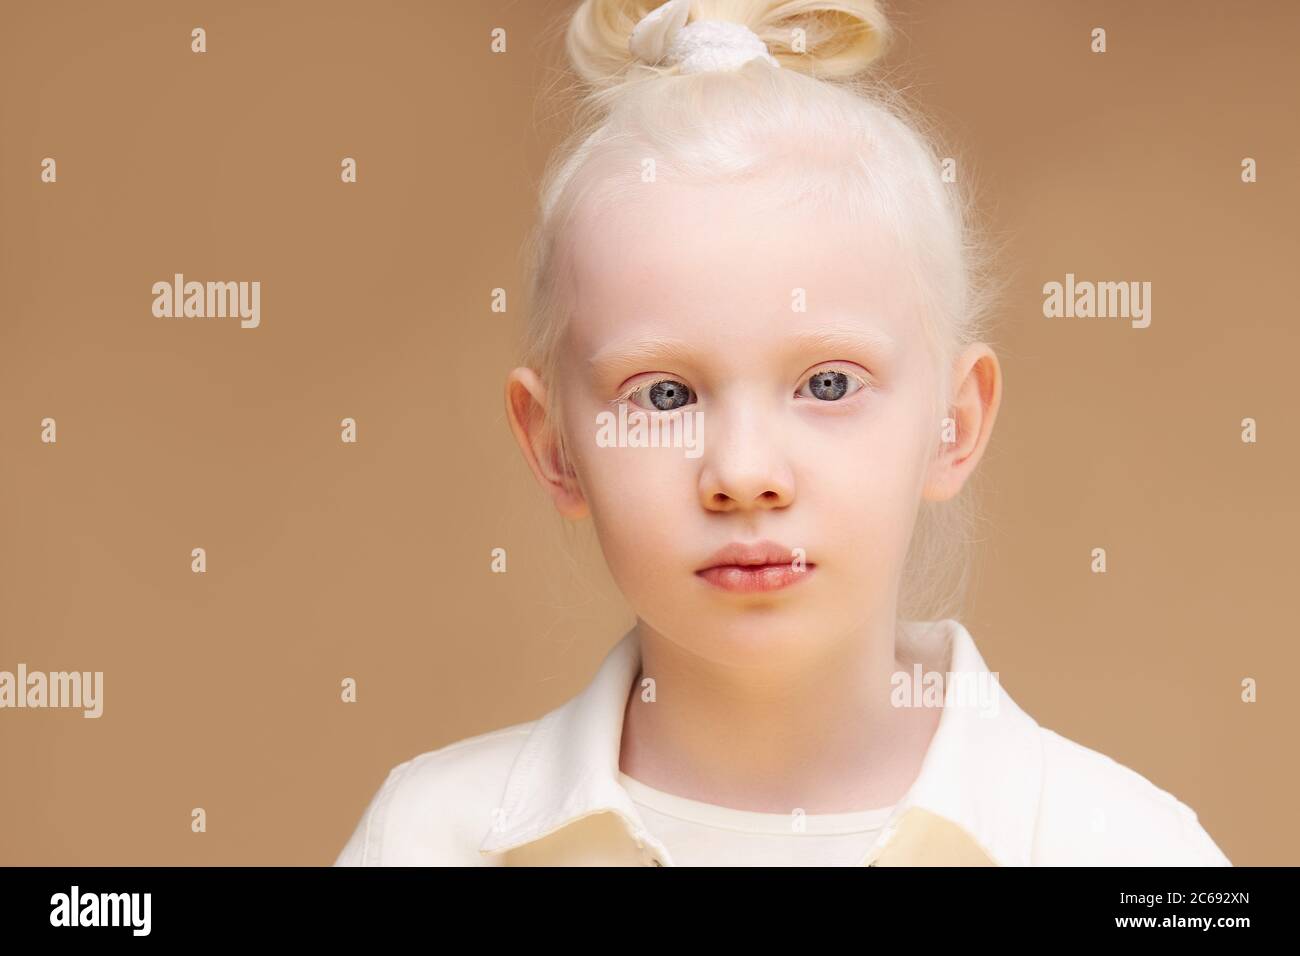 Portrait von Albino Kind Mädchen mit weißer Haut und weißen Haaren. Blonde  Mädchen mit ungewöhnlichen natürlichen Schönheit, Albinismus Konzept  Stockfotografie - Alamy